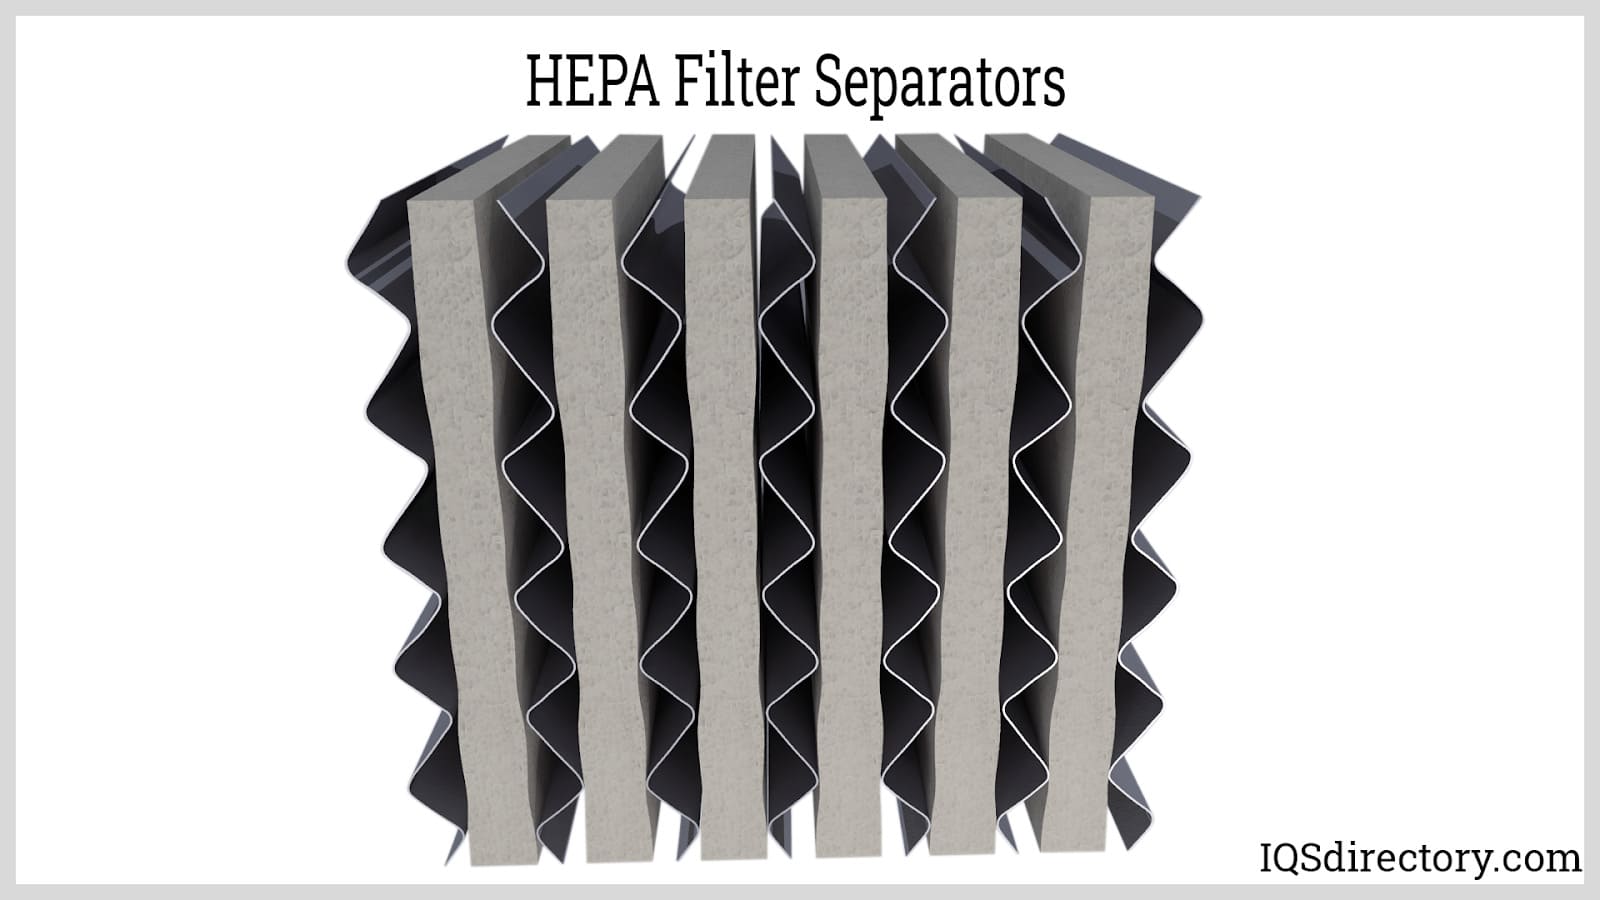 HEPA Filter Separators